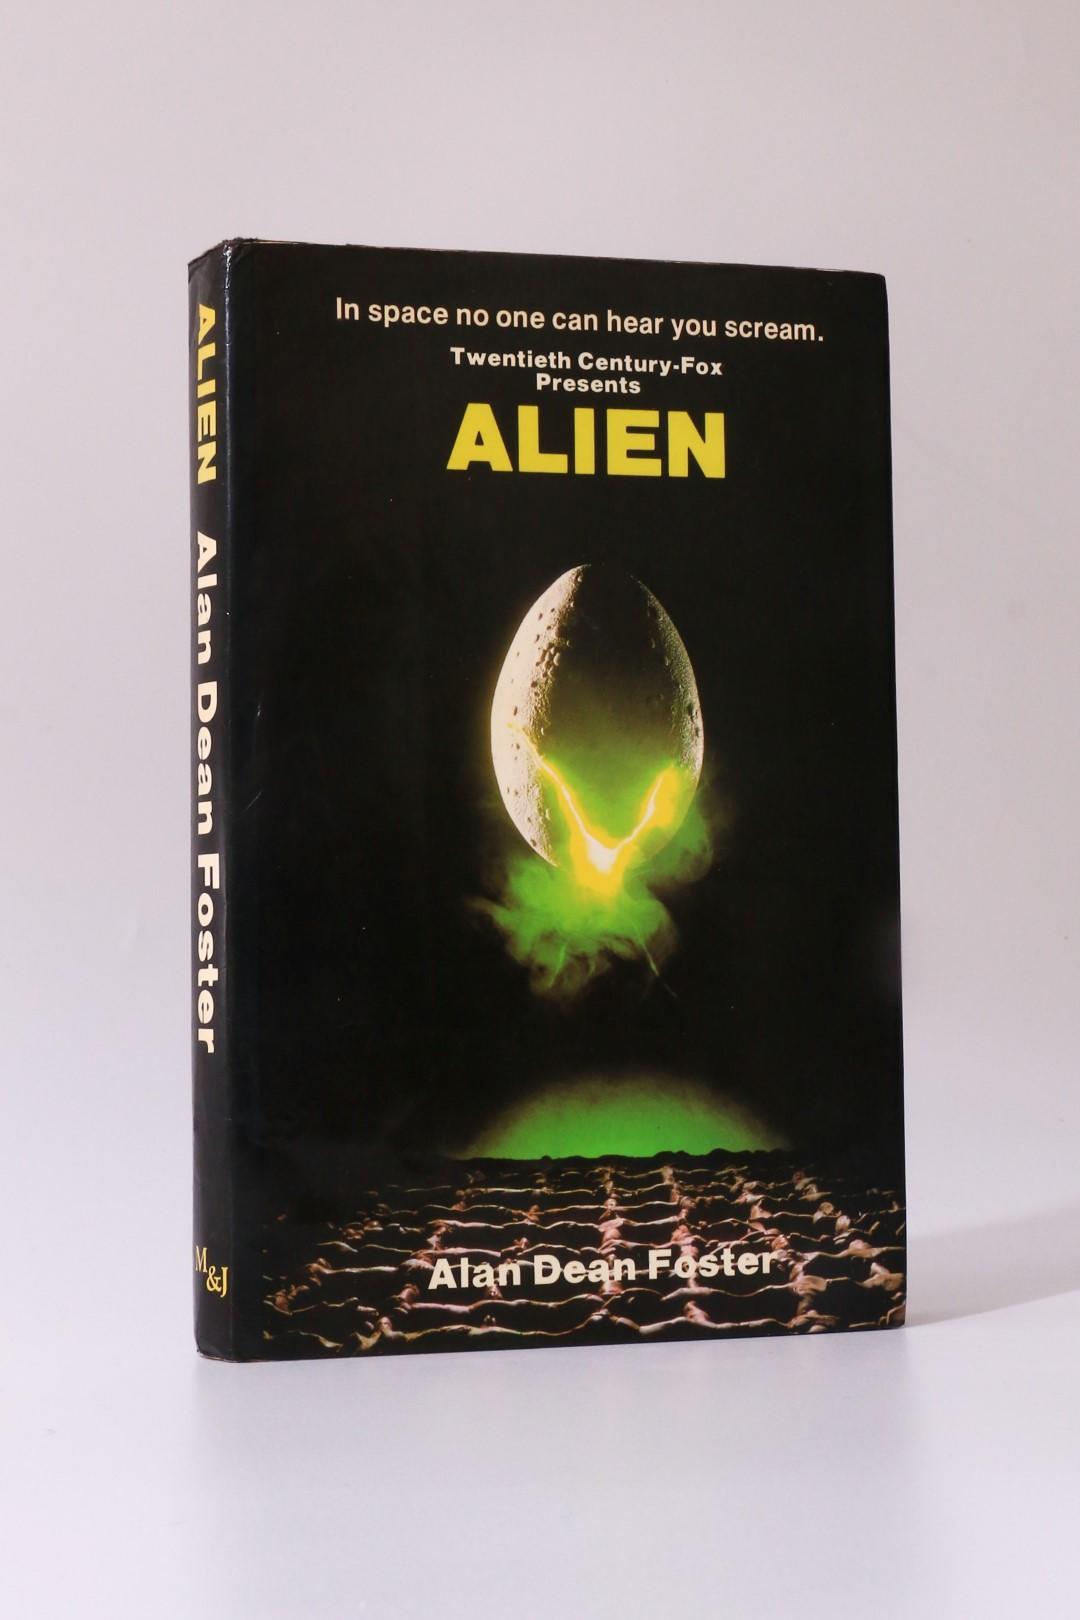 Alan Dean Foster - Alien - MacDonald & Jane's, 1979, First Edition.